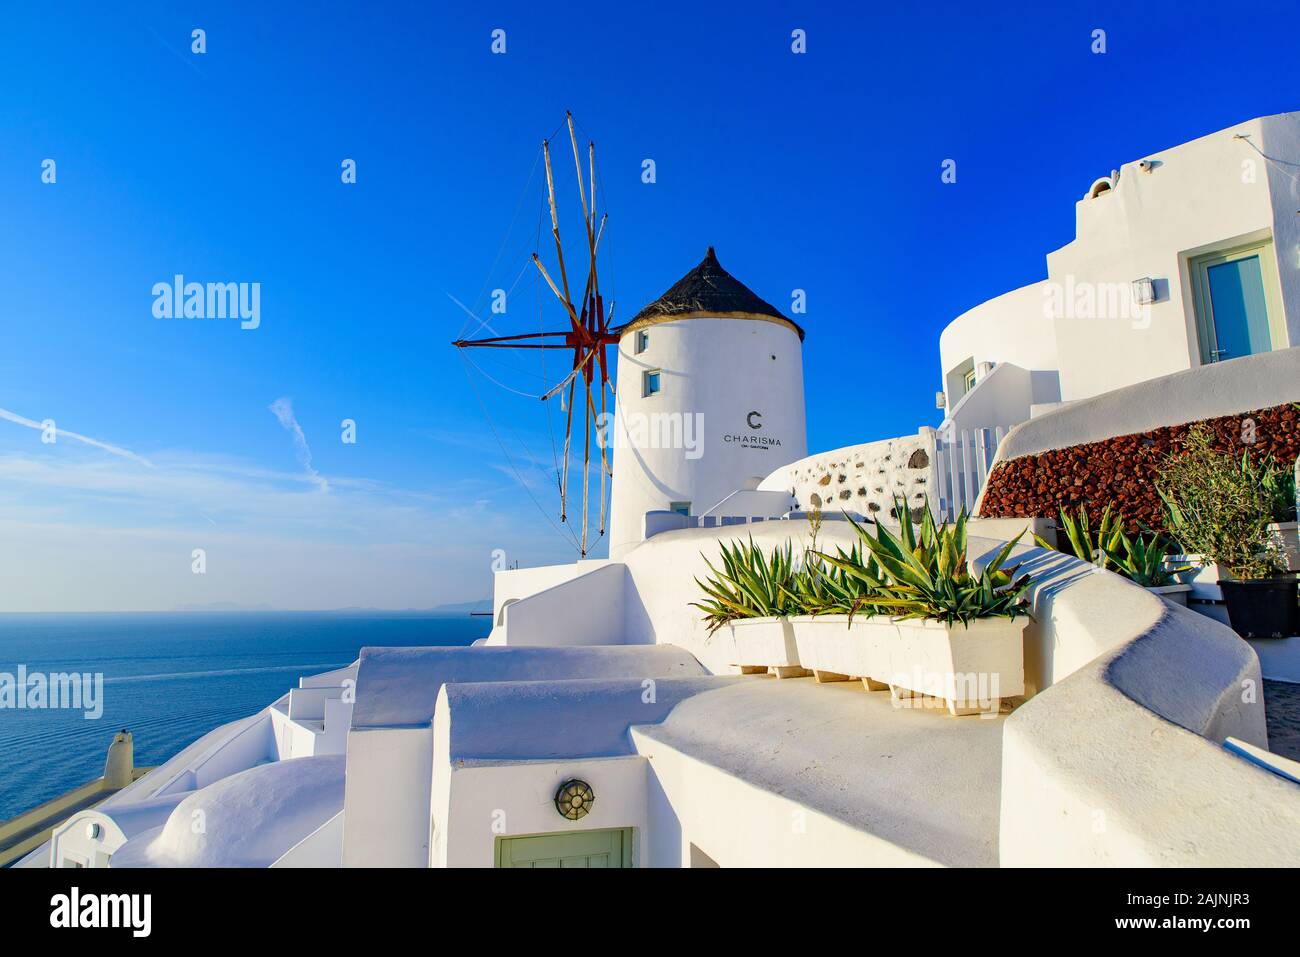 El molino de viento y edificios blancos tradicionales hacia el mar Egeo en Oia, Santorini, Grecia Foto de stock